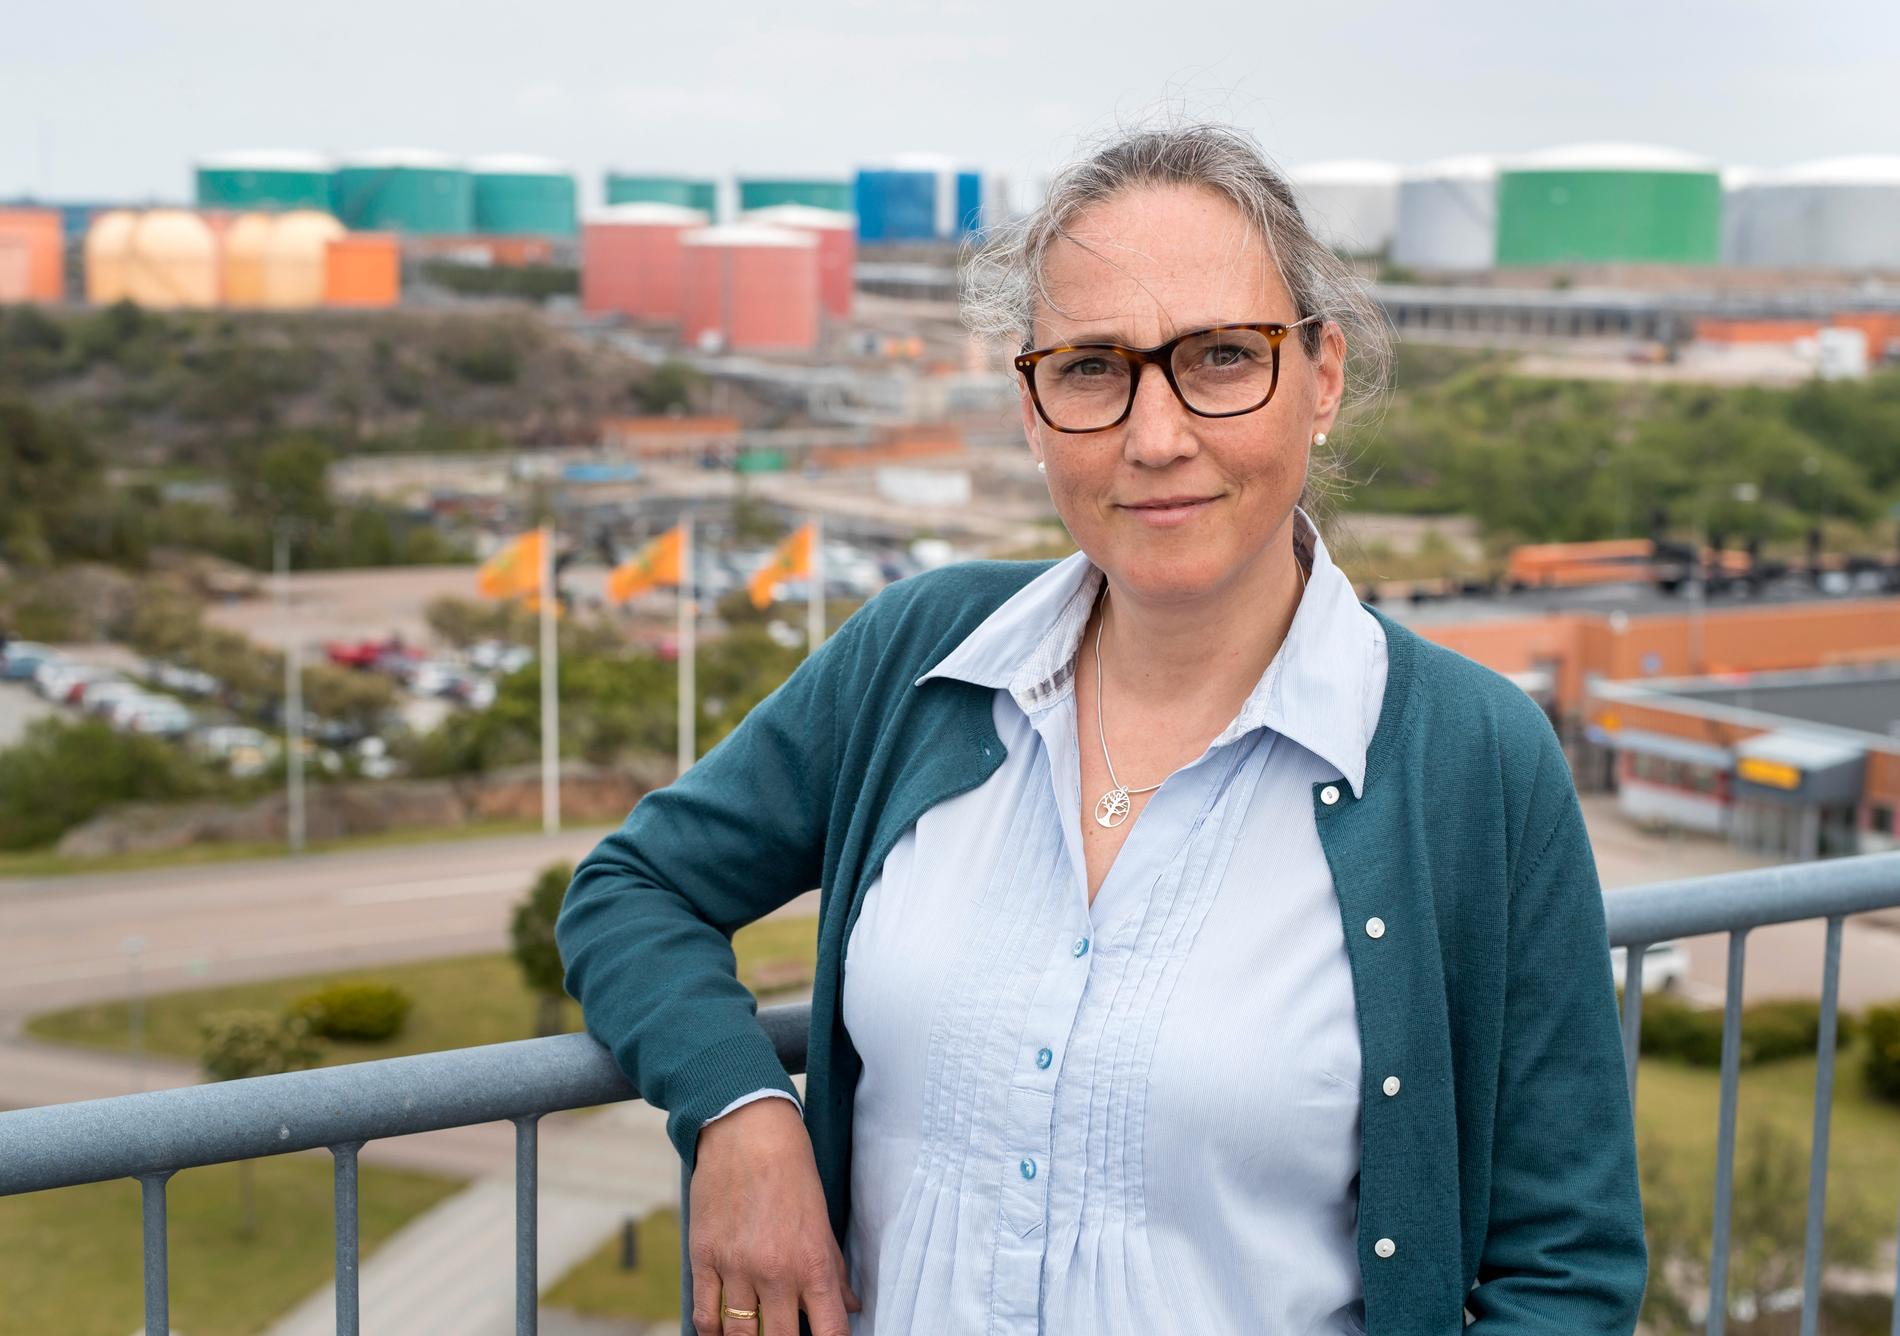 Malin Hallin är chef för hållbar utveckling på drivmedelsbolaget Preem. Hon ser den planerade utbyggnaden av raffinaderiet vid Lysekil som en investering för miljön, eftersom man ska kunna göra bensin och diesel av förnybara råvaror. Men kritiker pekar på en annan del av utbyggnaden, som vållar stora utsläpp av koldioxid.